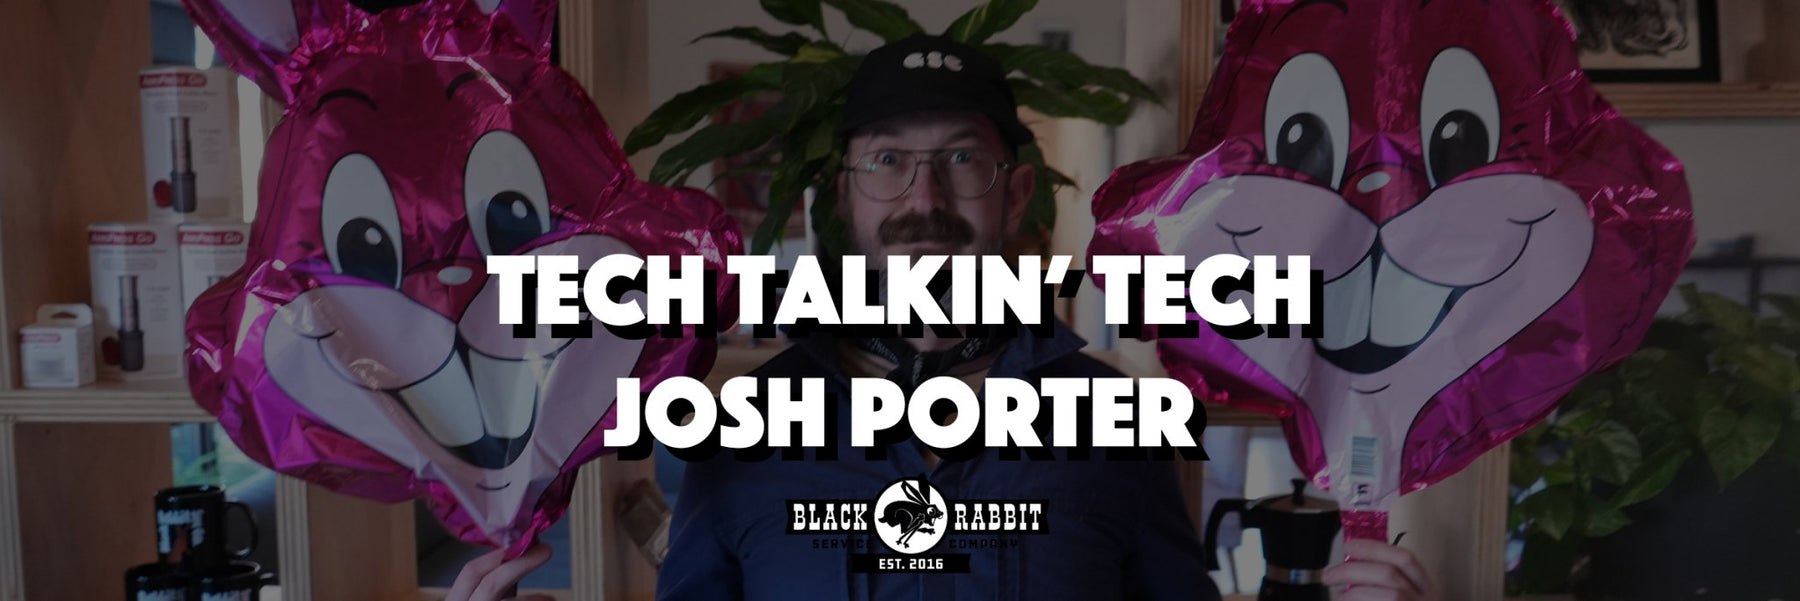 Tech Talkin' Tech: Josh Porter - Black Rabbit Service Co.